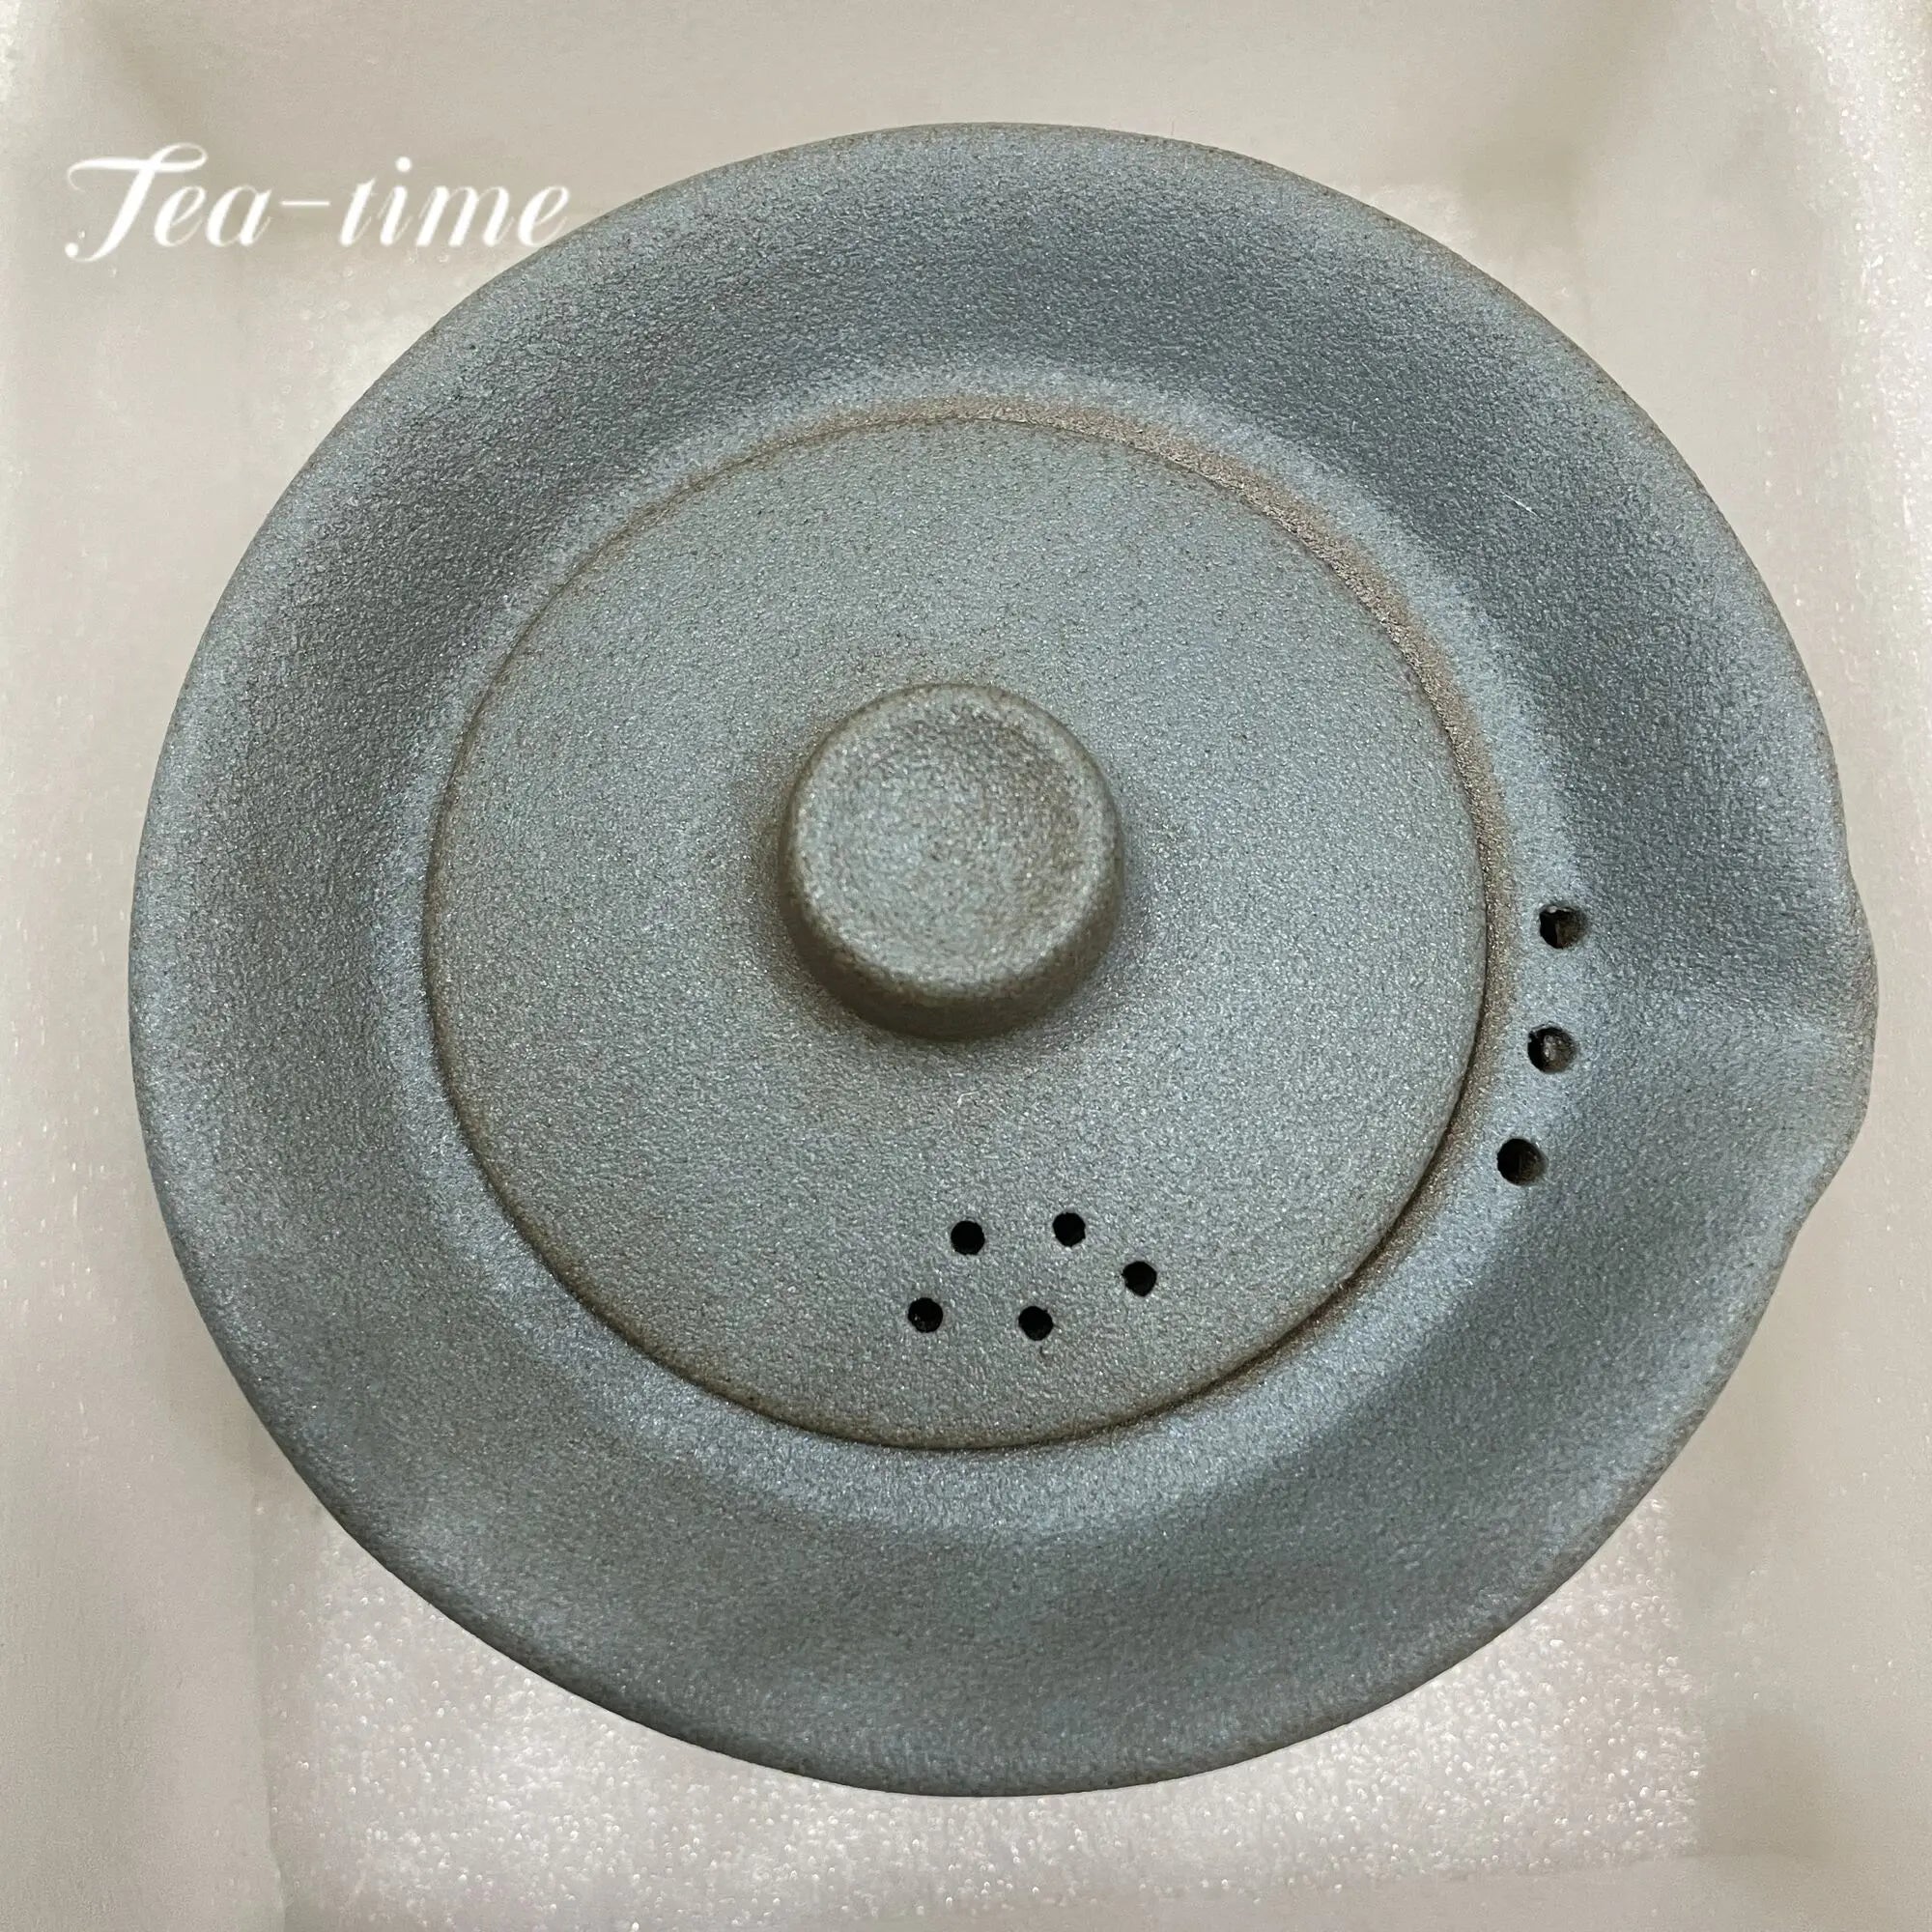 200 ml Japanse keramische theepot ketelthee maken Gaiwan theekop voor puer 1 kom 2 kopjes thee -theeset retro ruw aardewerk drinkware